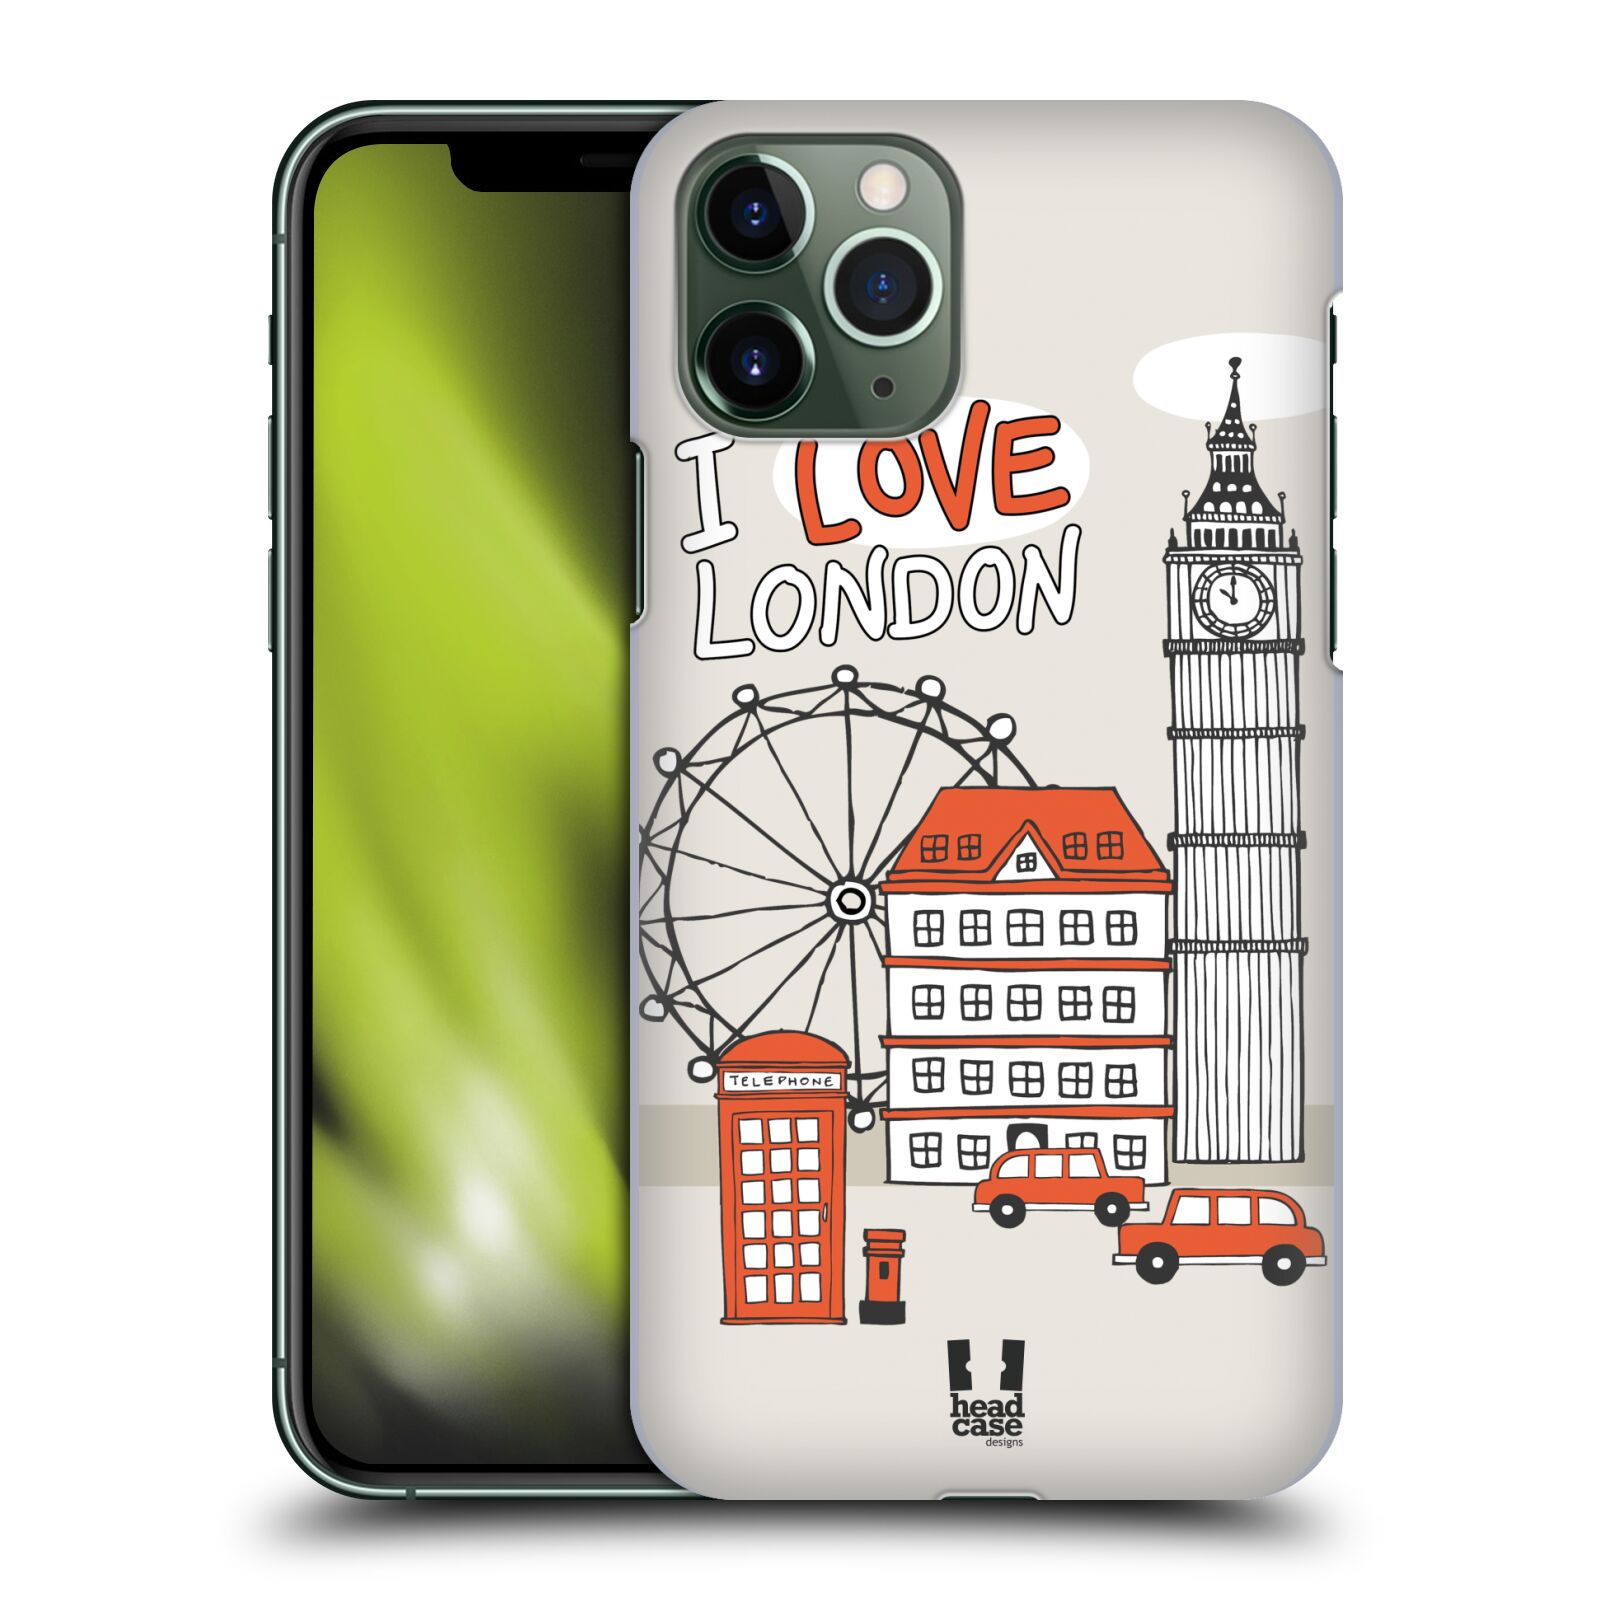 Pouzdro na mobil Apple Iphone 11 PRO - HEAD CASE - vzor Kreslená městečka ČERVENÁ, Anglie, Londýn, I LOVE LONDON